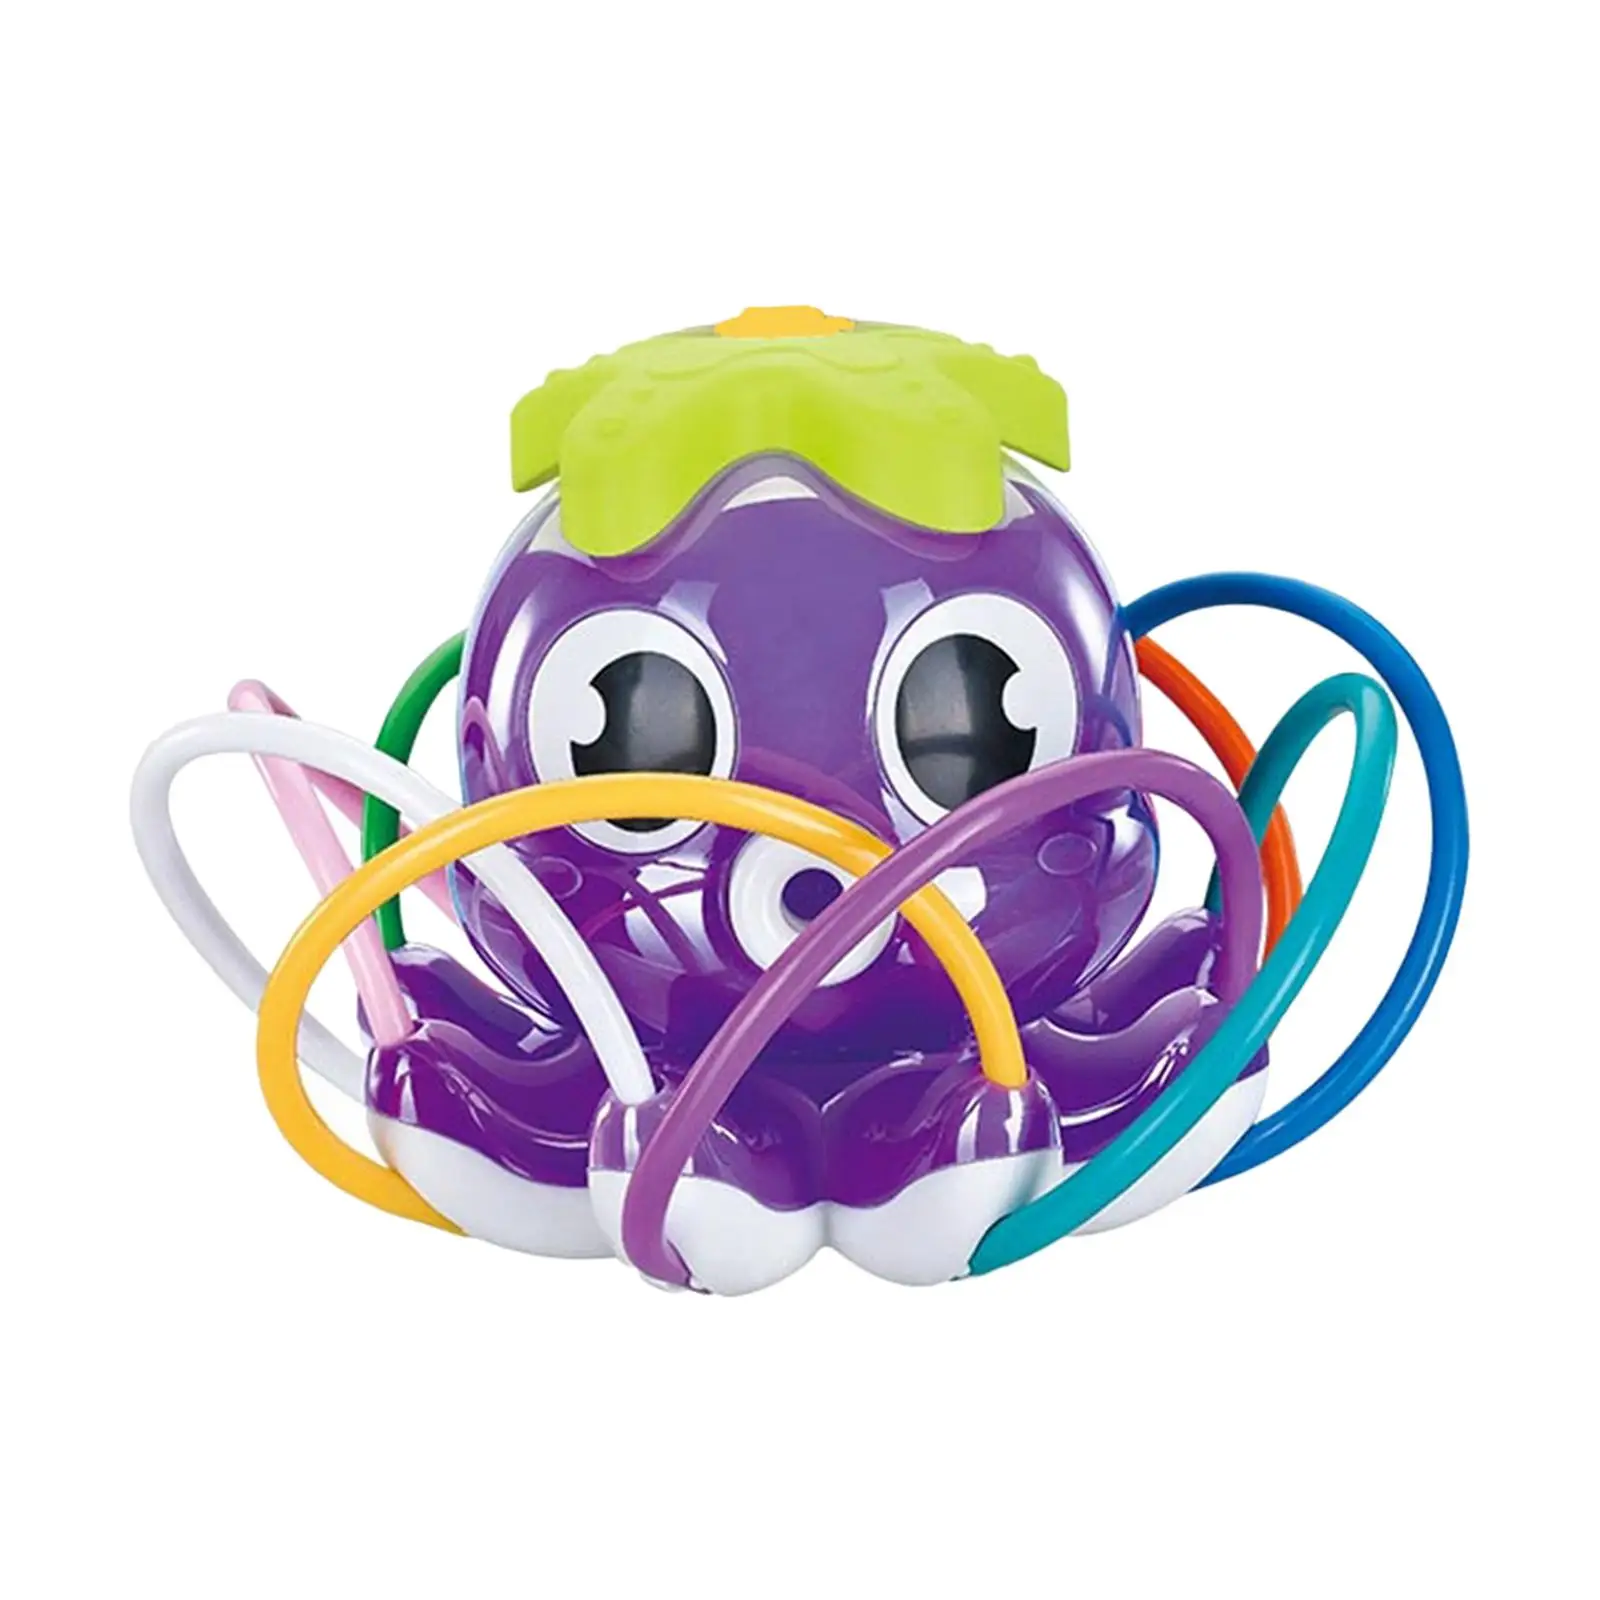 Octopus Sprinkler Toy Backyard Game Water Splashing Fun Toy for Kids Holiday